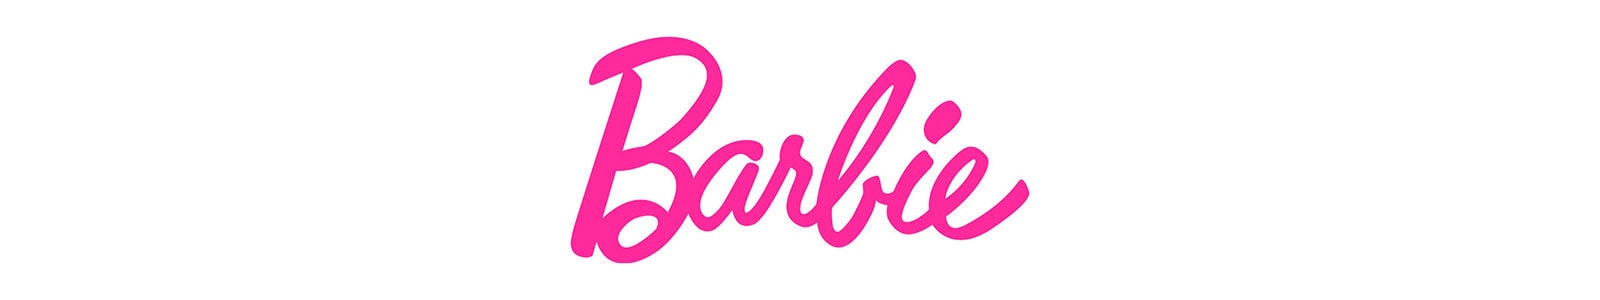 Barbie Versiering